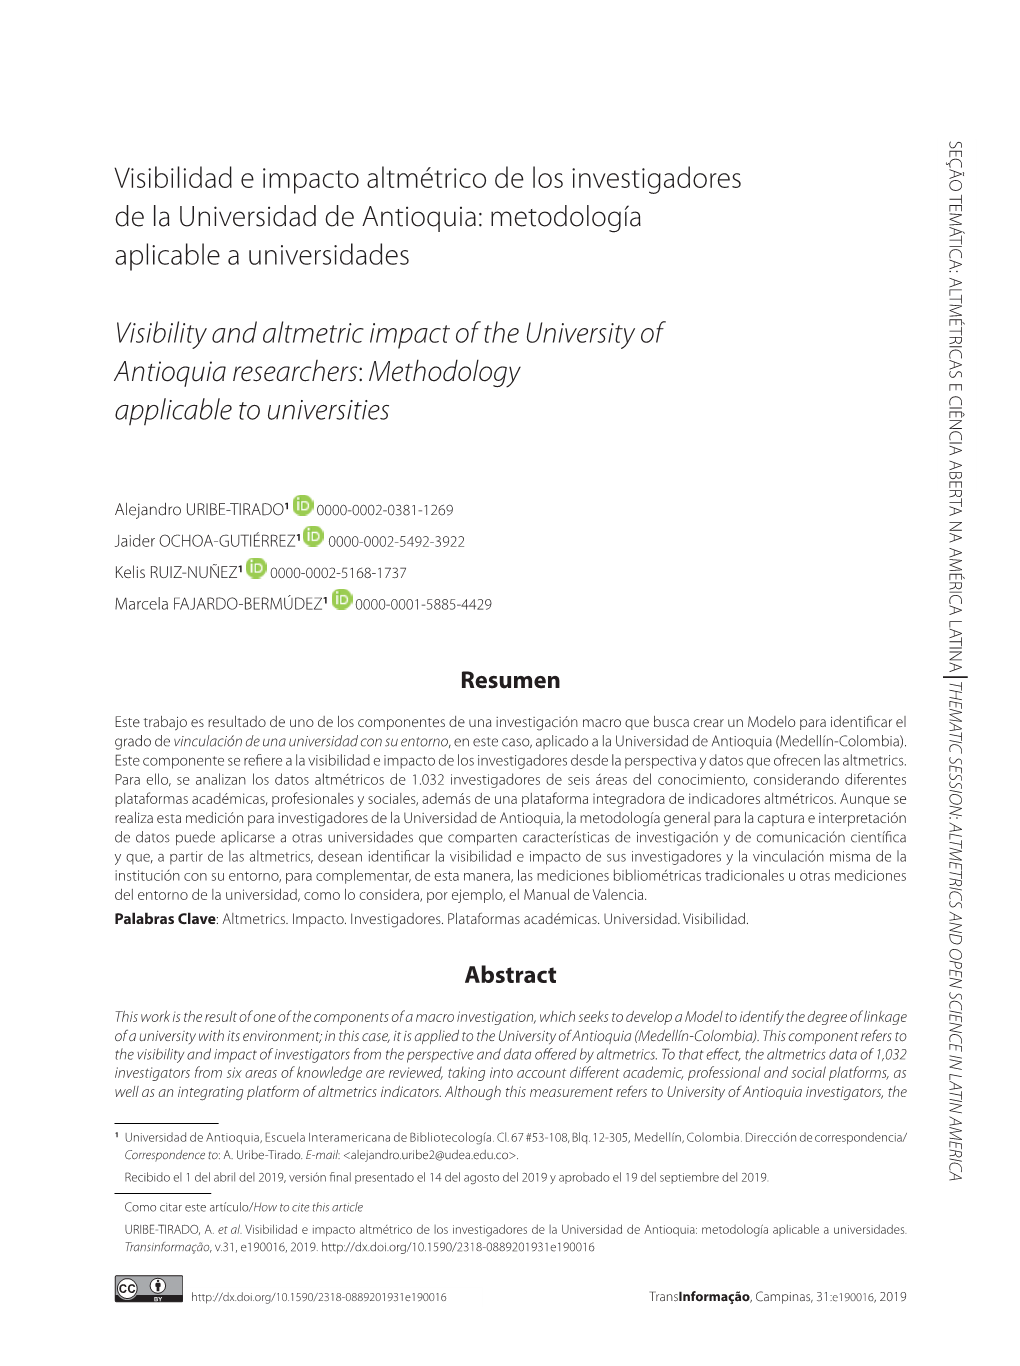 Visibilidad E Impacto Altmétrico De Los Investigadores De La Universidad De Antioquia: Metodología Aplicable a Universidades